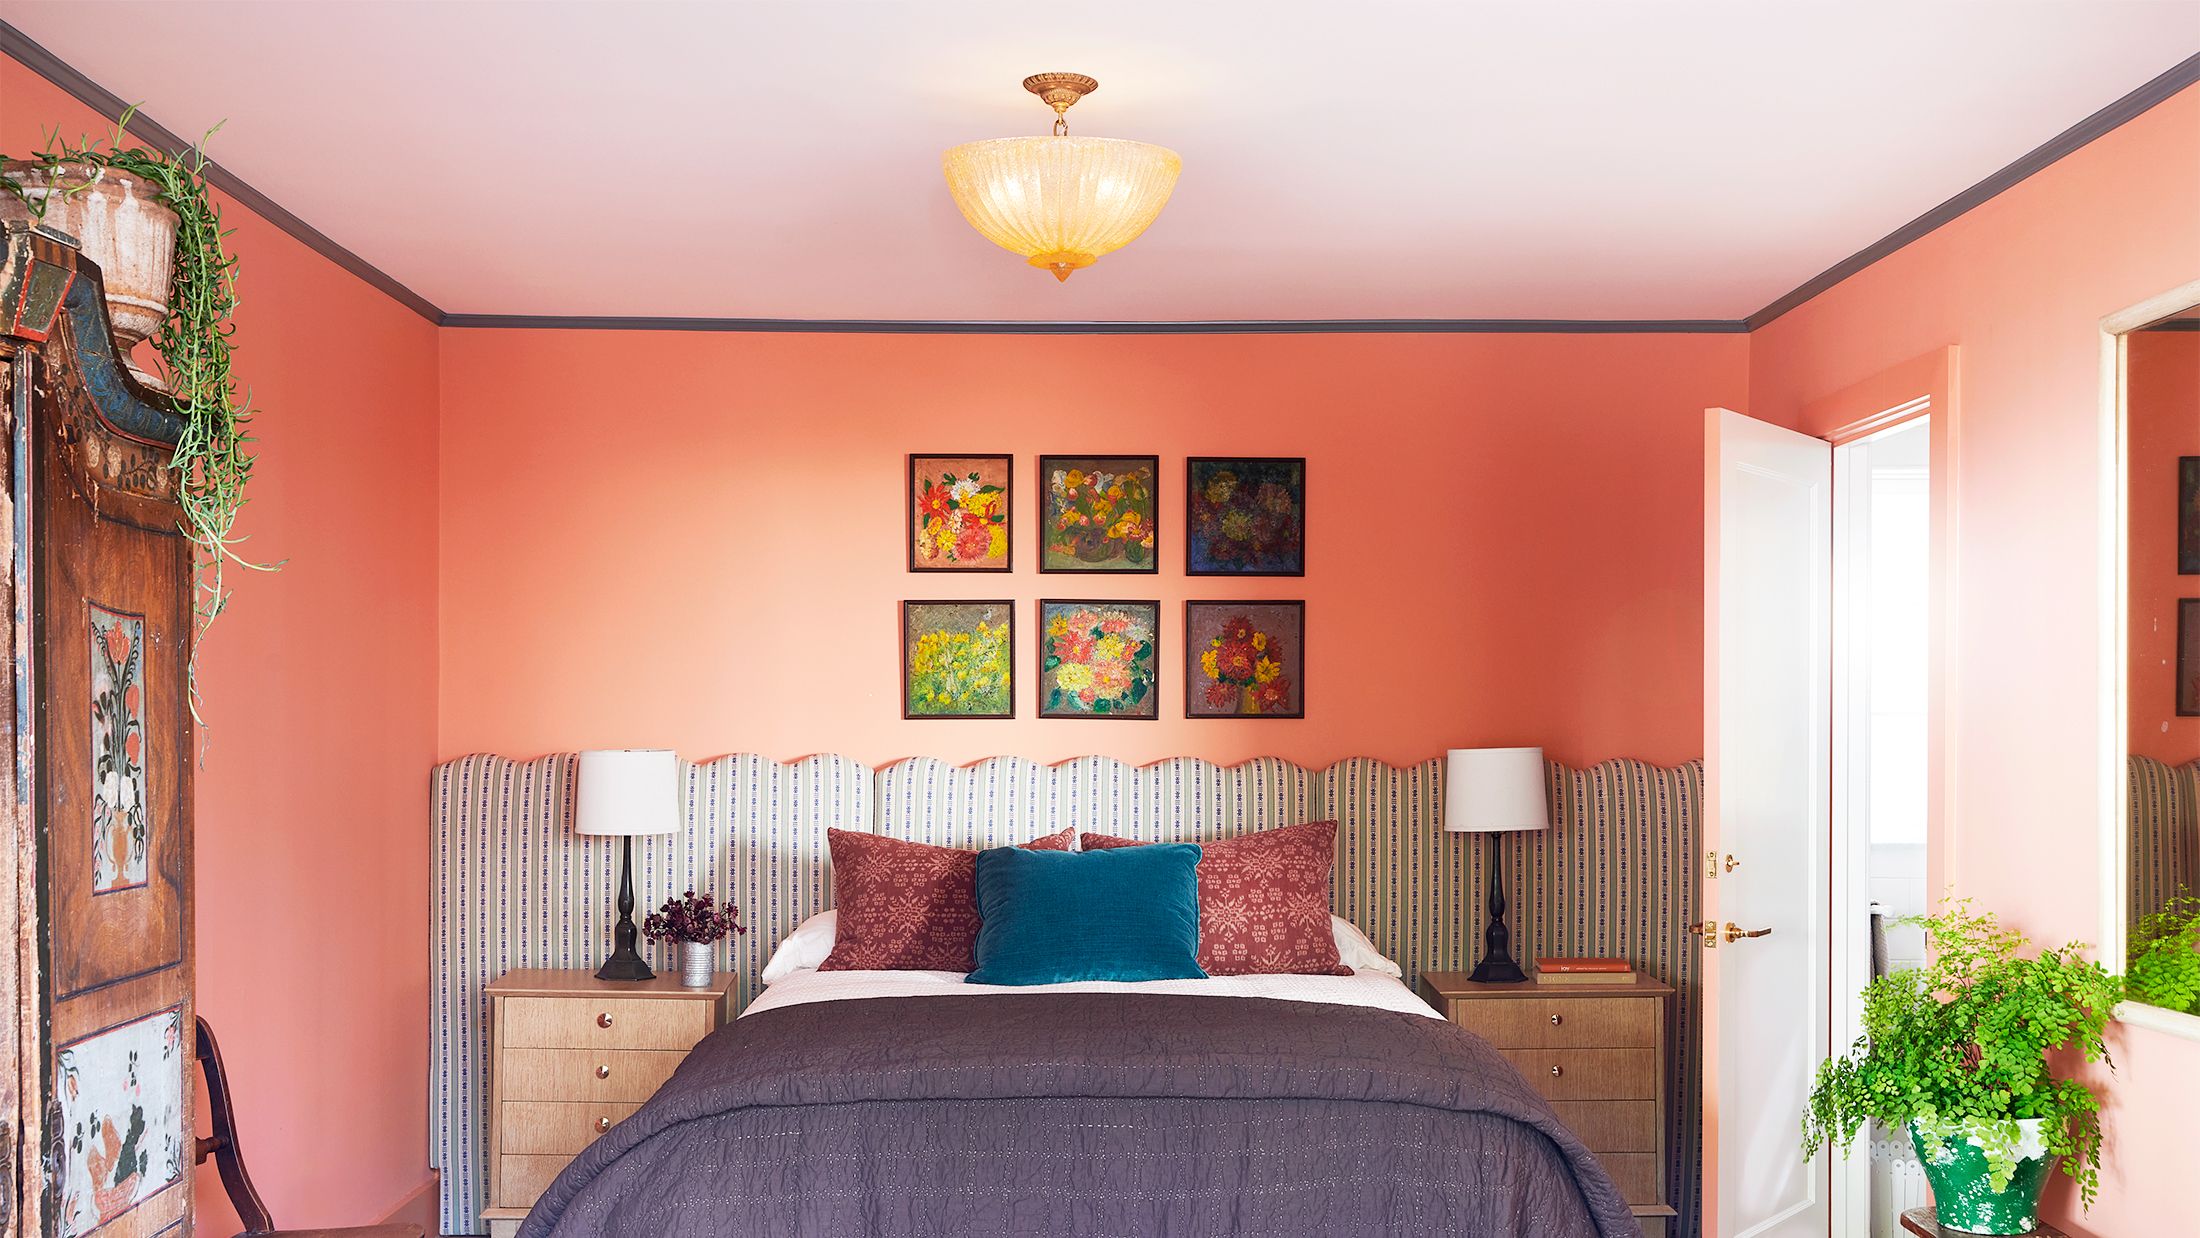 romantic bedroom paint colors ideas